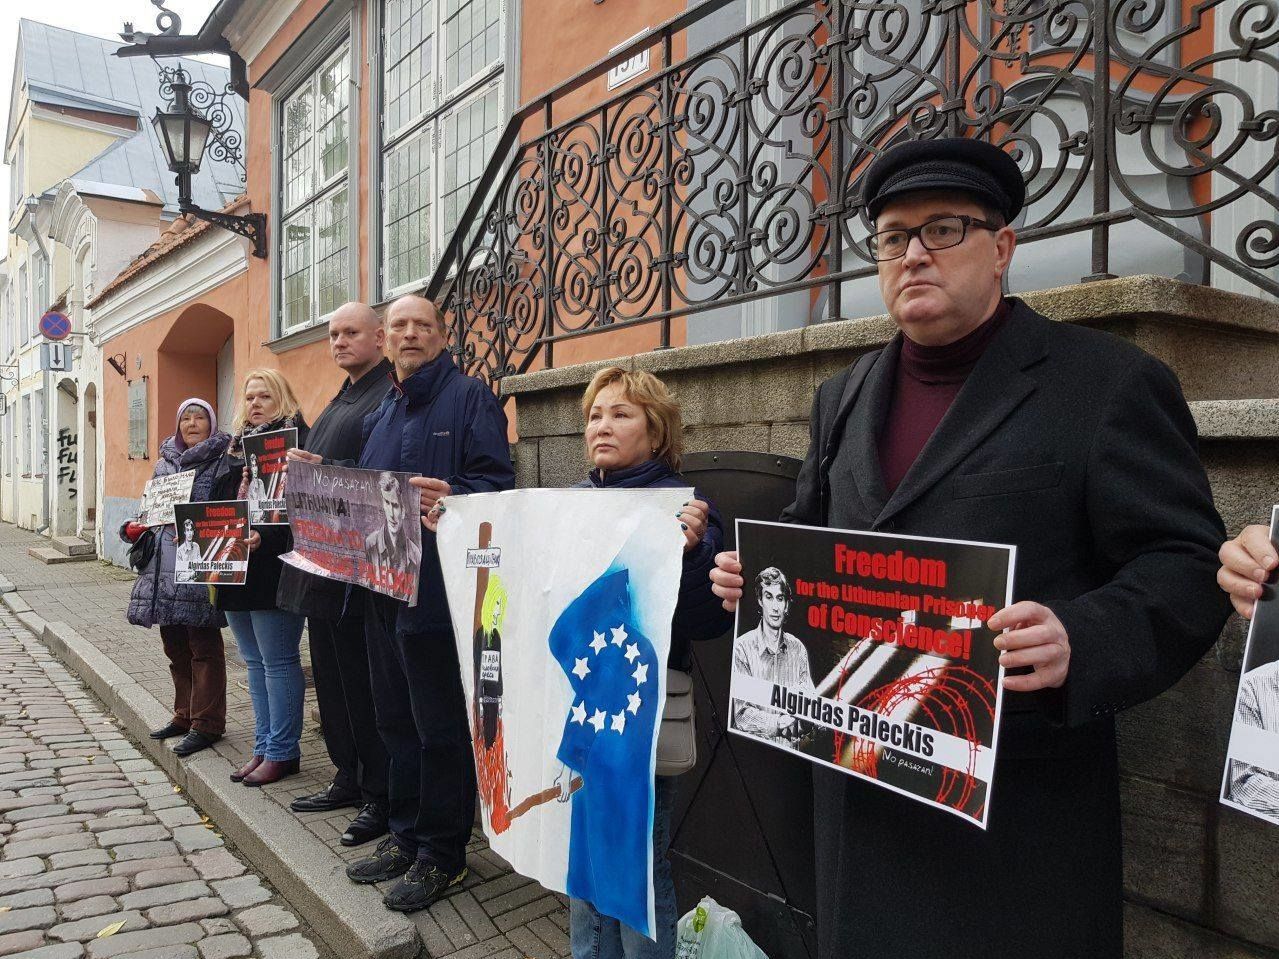 Правозащитник Сергей Середенко на пикете в защиту Альгирдаса Палецкиса у посольства Литвы в Таллинне, 2019 год